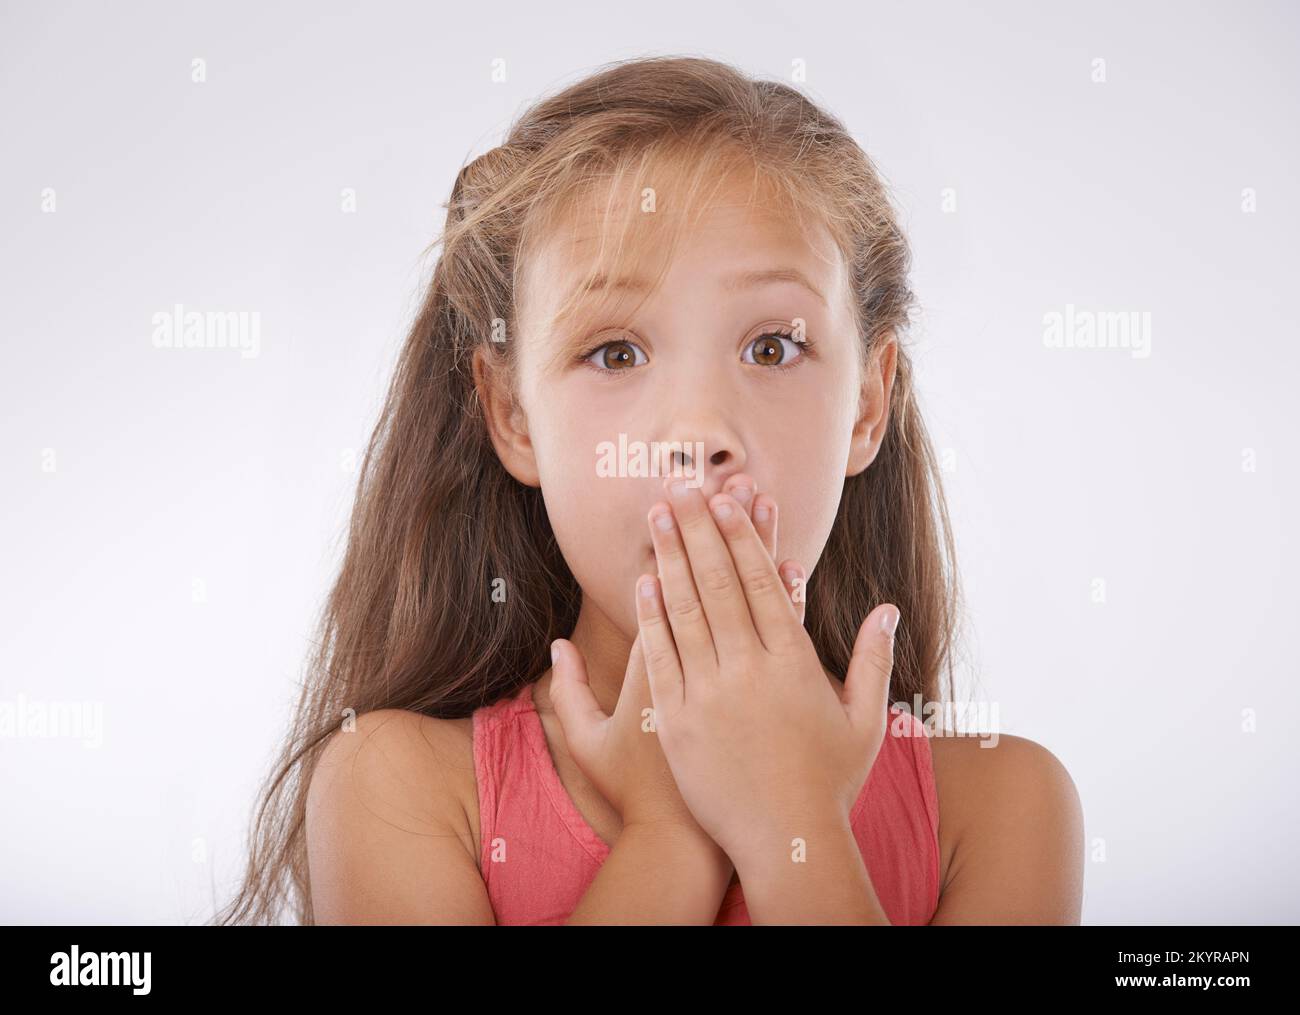 Elle ne peut pas le croire. Portrait d'une petite fille couvrant sa bouche en incrédulité. Banque D'Images